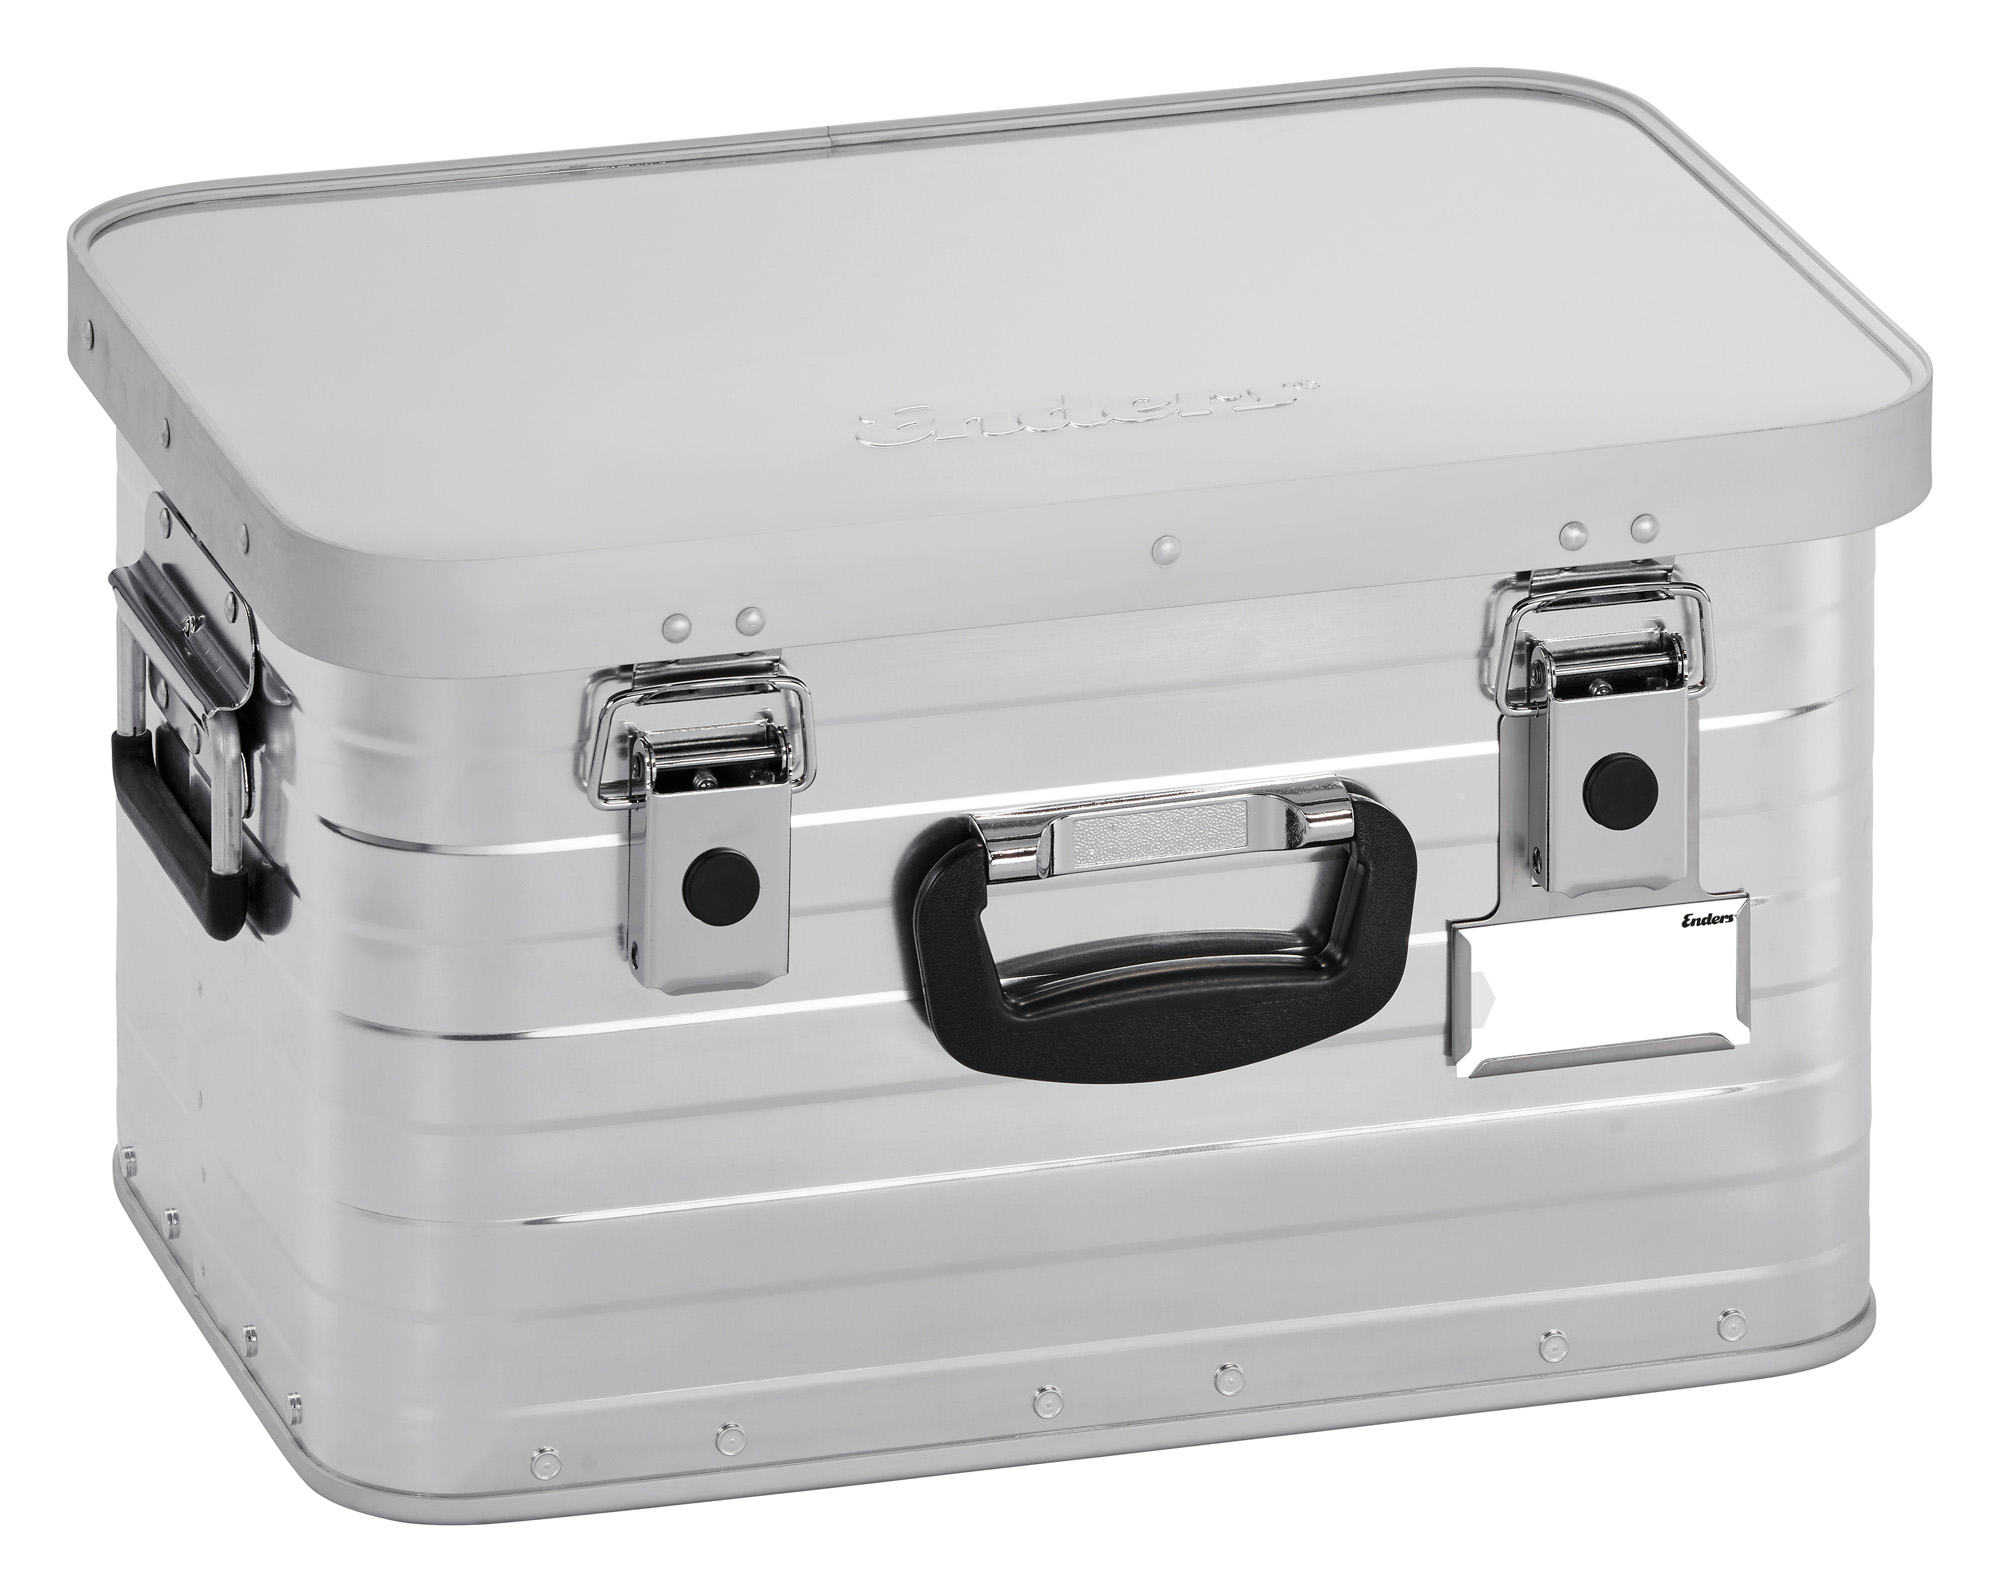 Enders Toronto S Classic Box Aluminiumbox 29 Liter